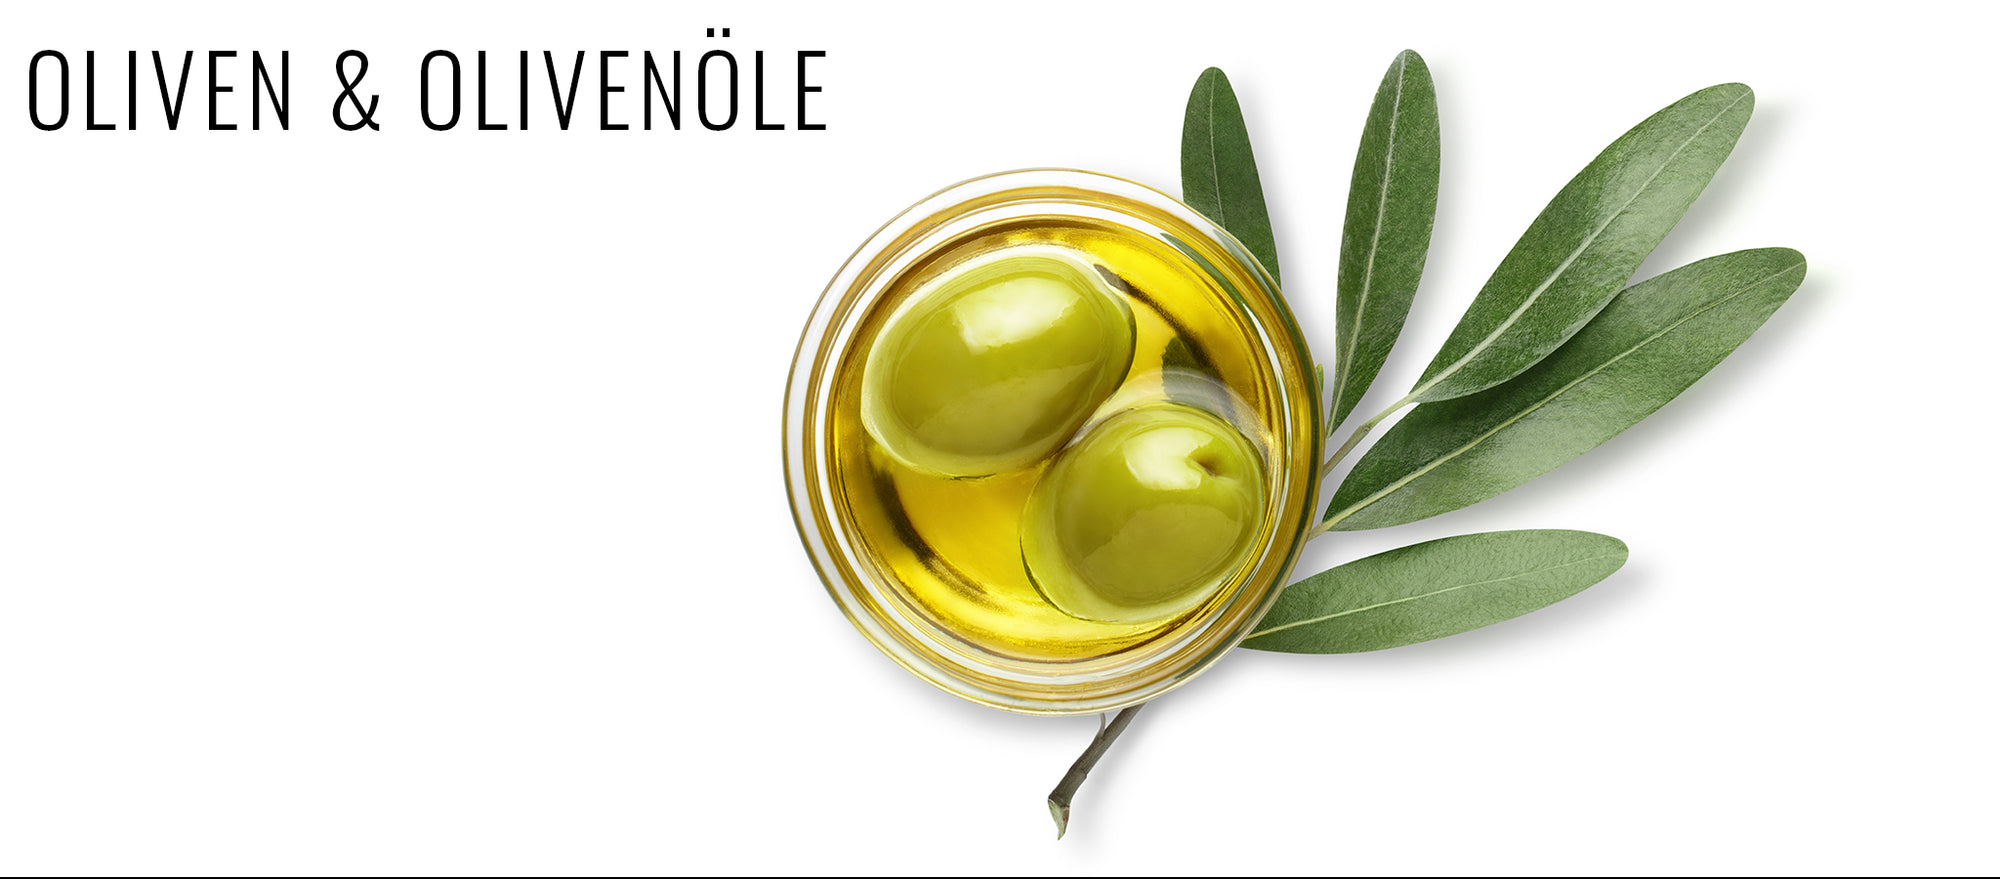 Oliven und Olivenöl von Meroh.de